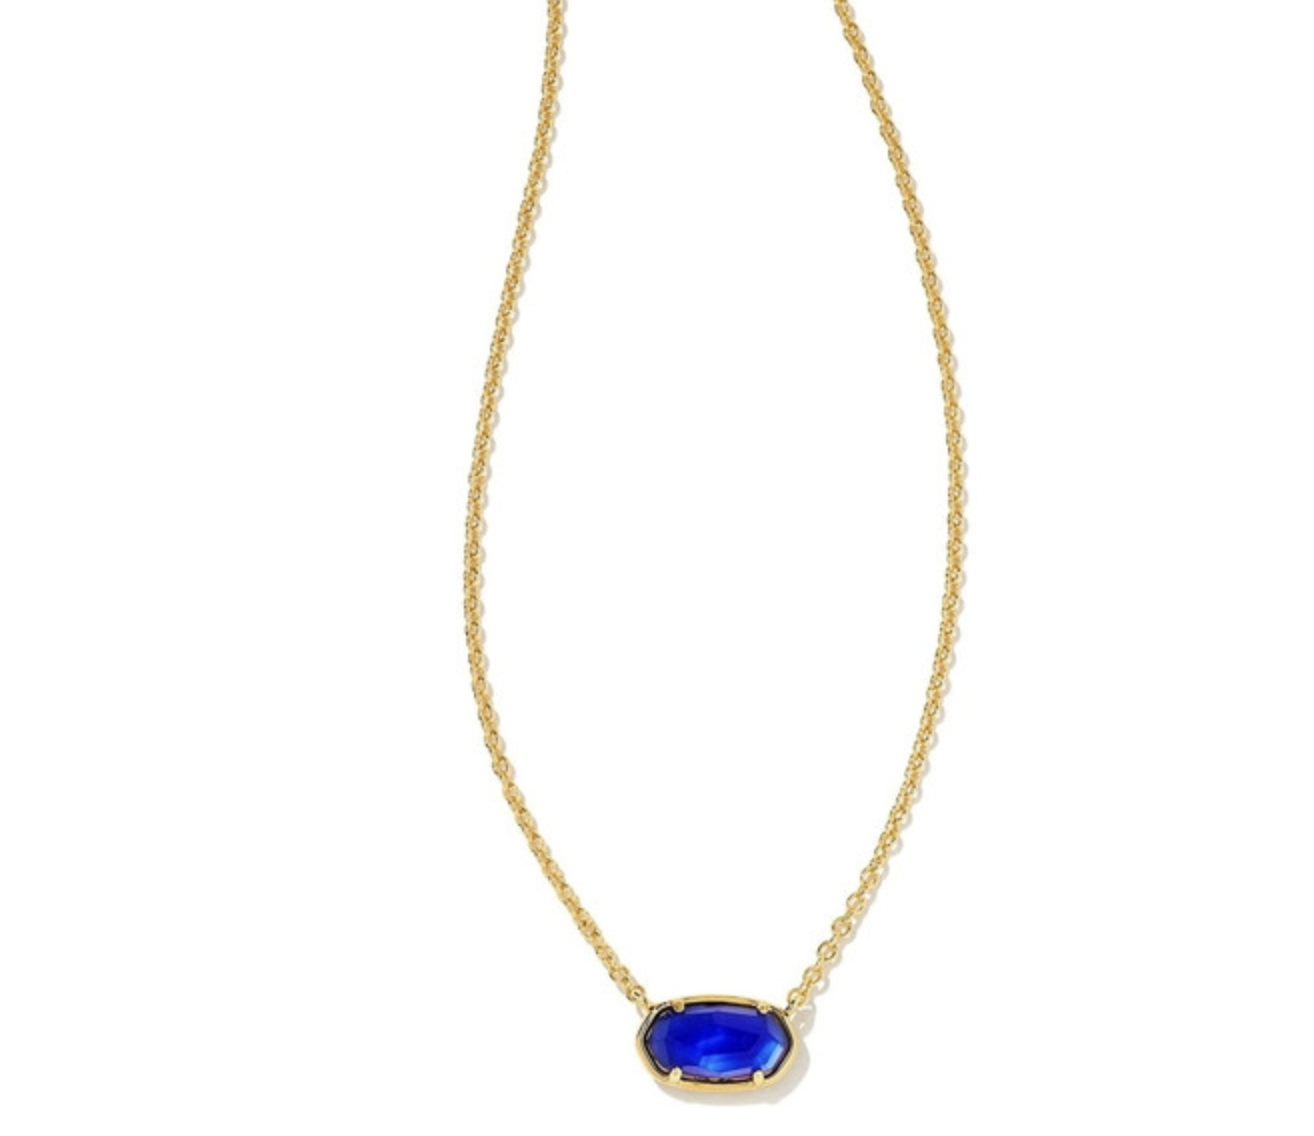 Grayson Short Pendant Necklace- Gold Cobalt Blue Illusion